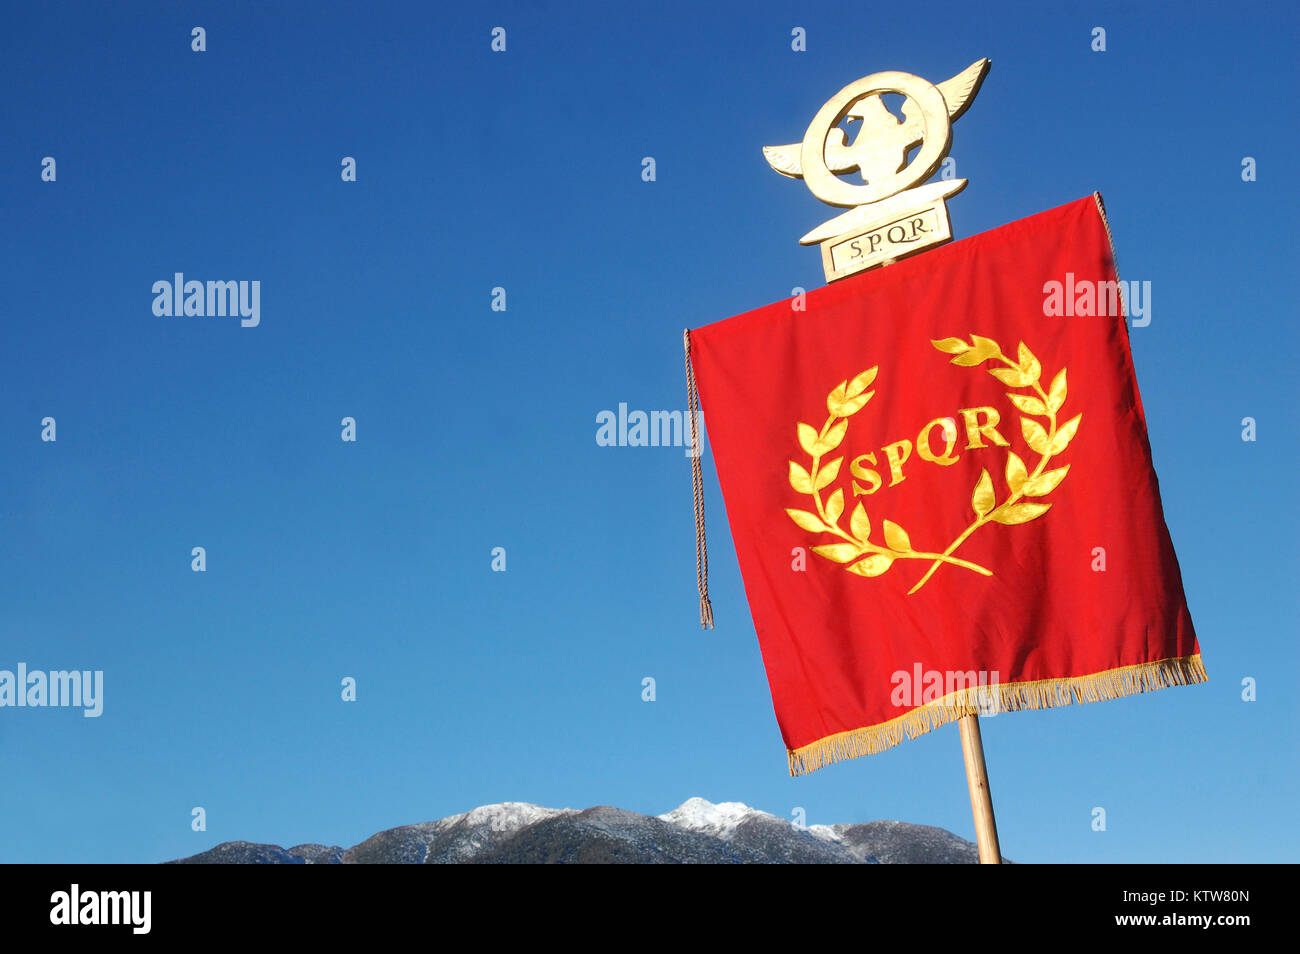 Visualización estándar romana SPQR, contra el cielo azul y los alpes Foto de stock